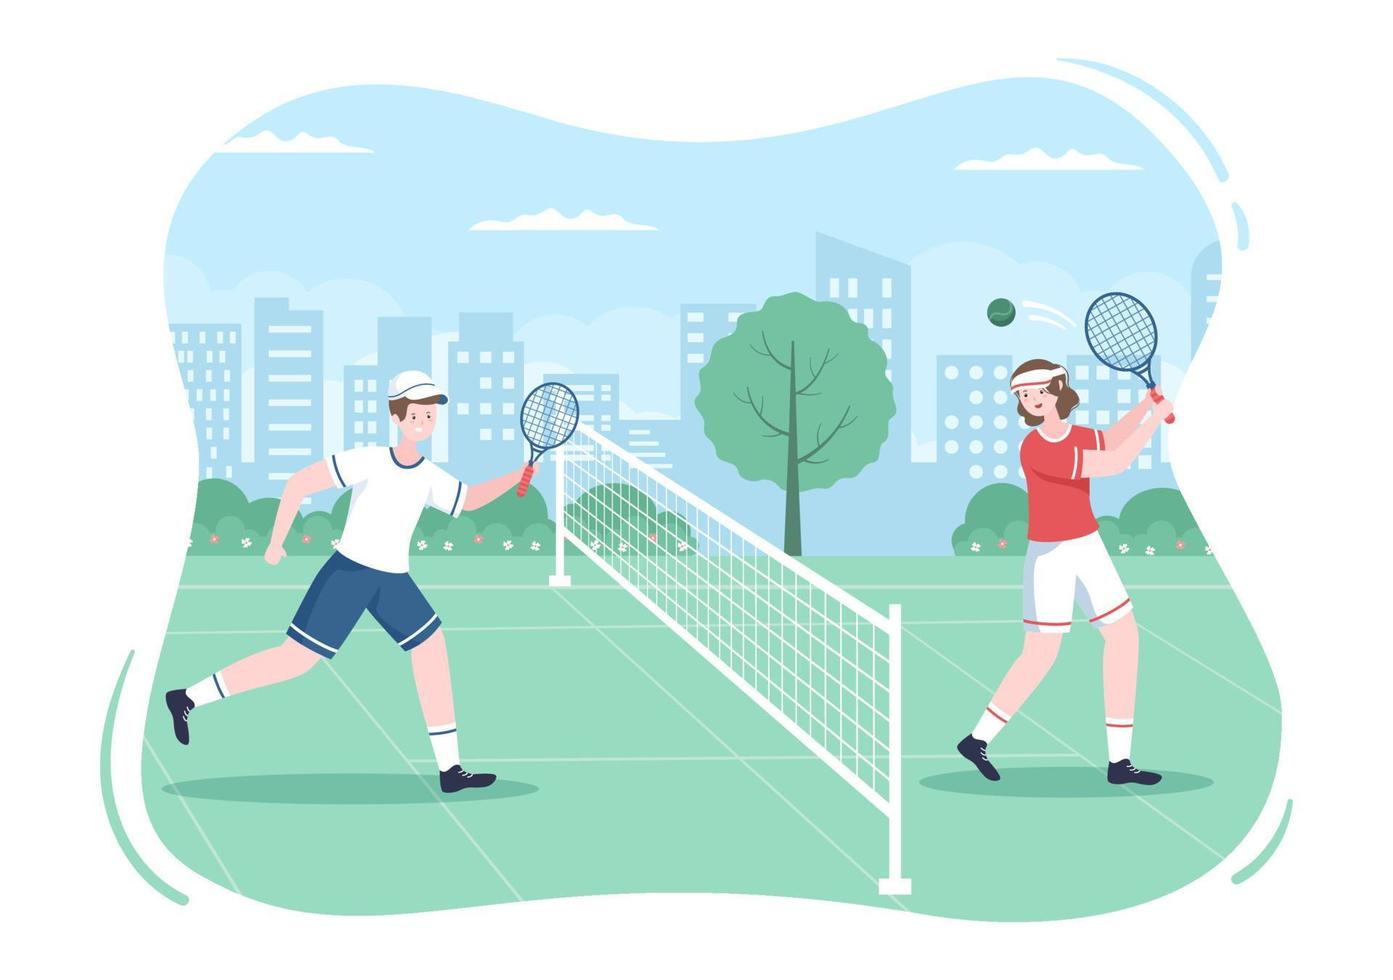 tenista com raquete na mão e bola na quadra. pessoas fazendo partida de esportes em ilustração de desenho animado plana vetor